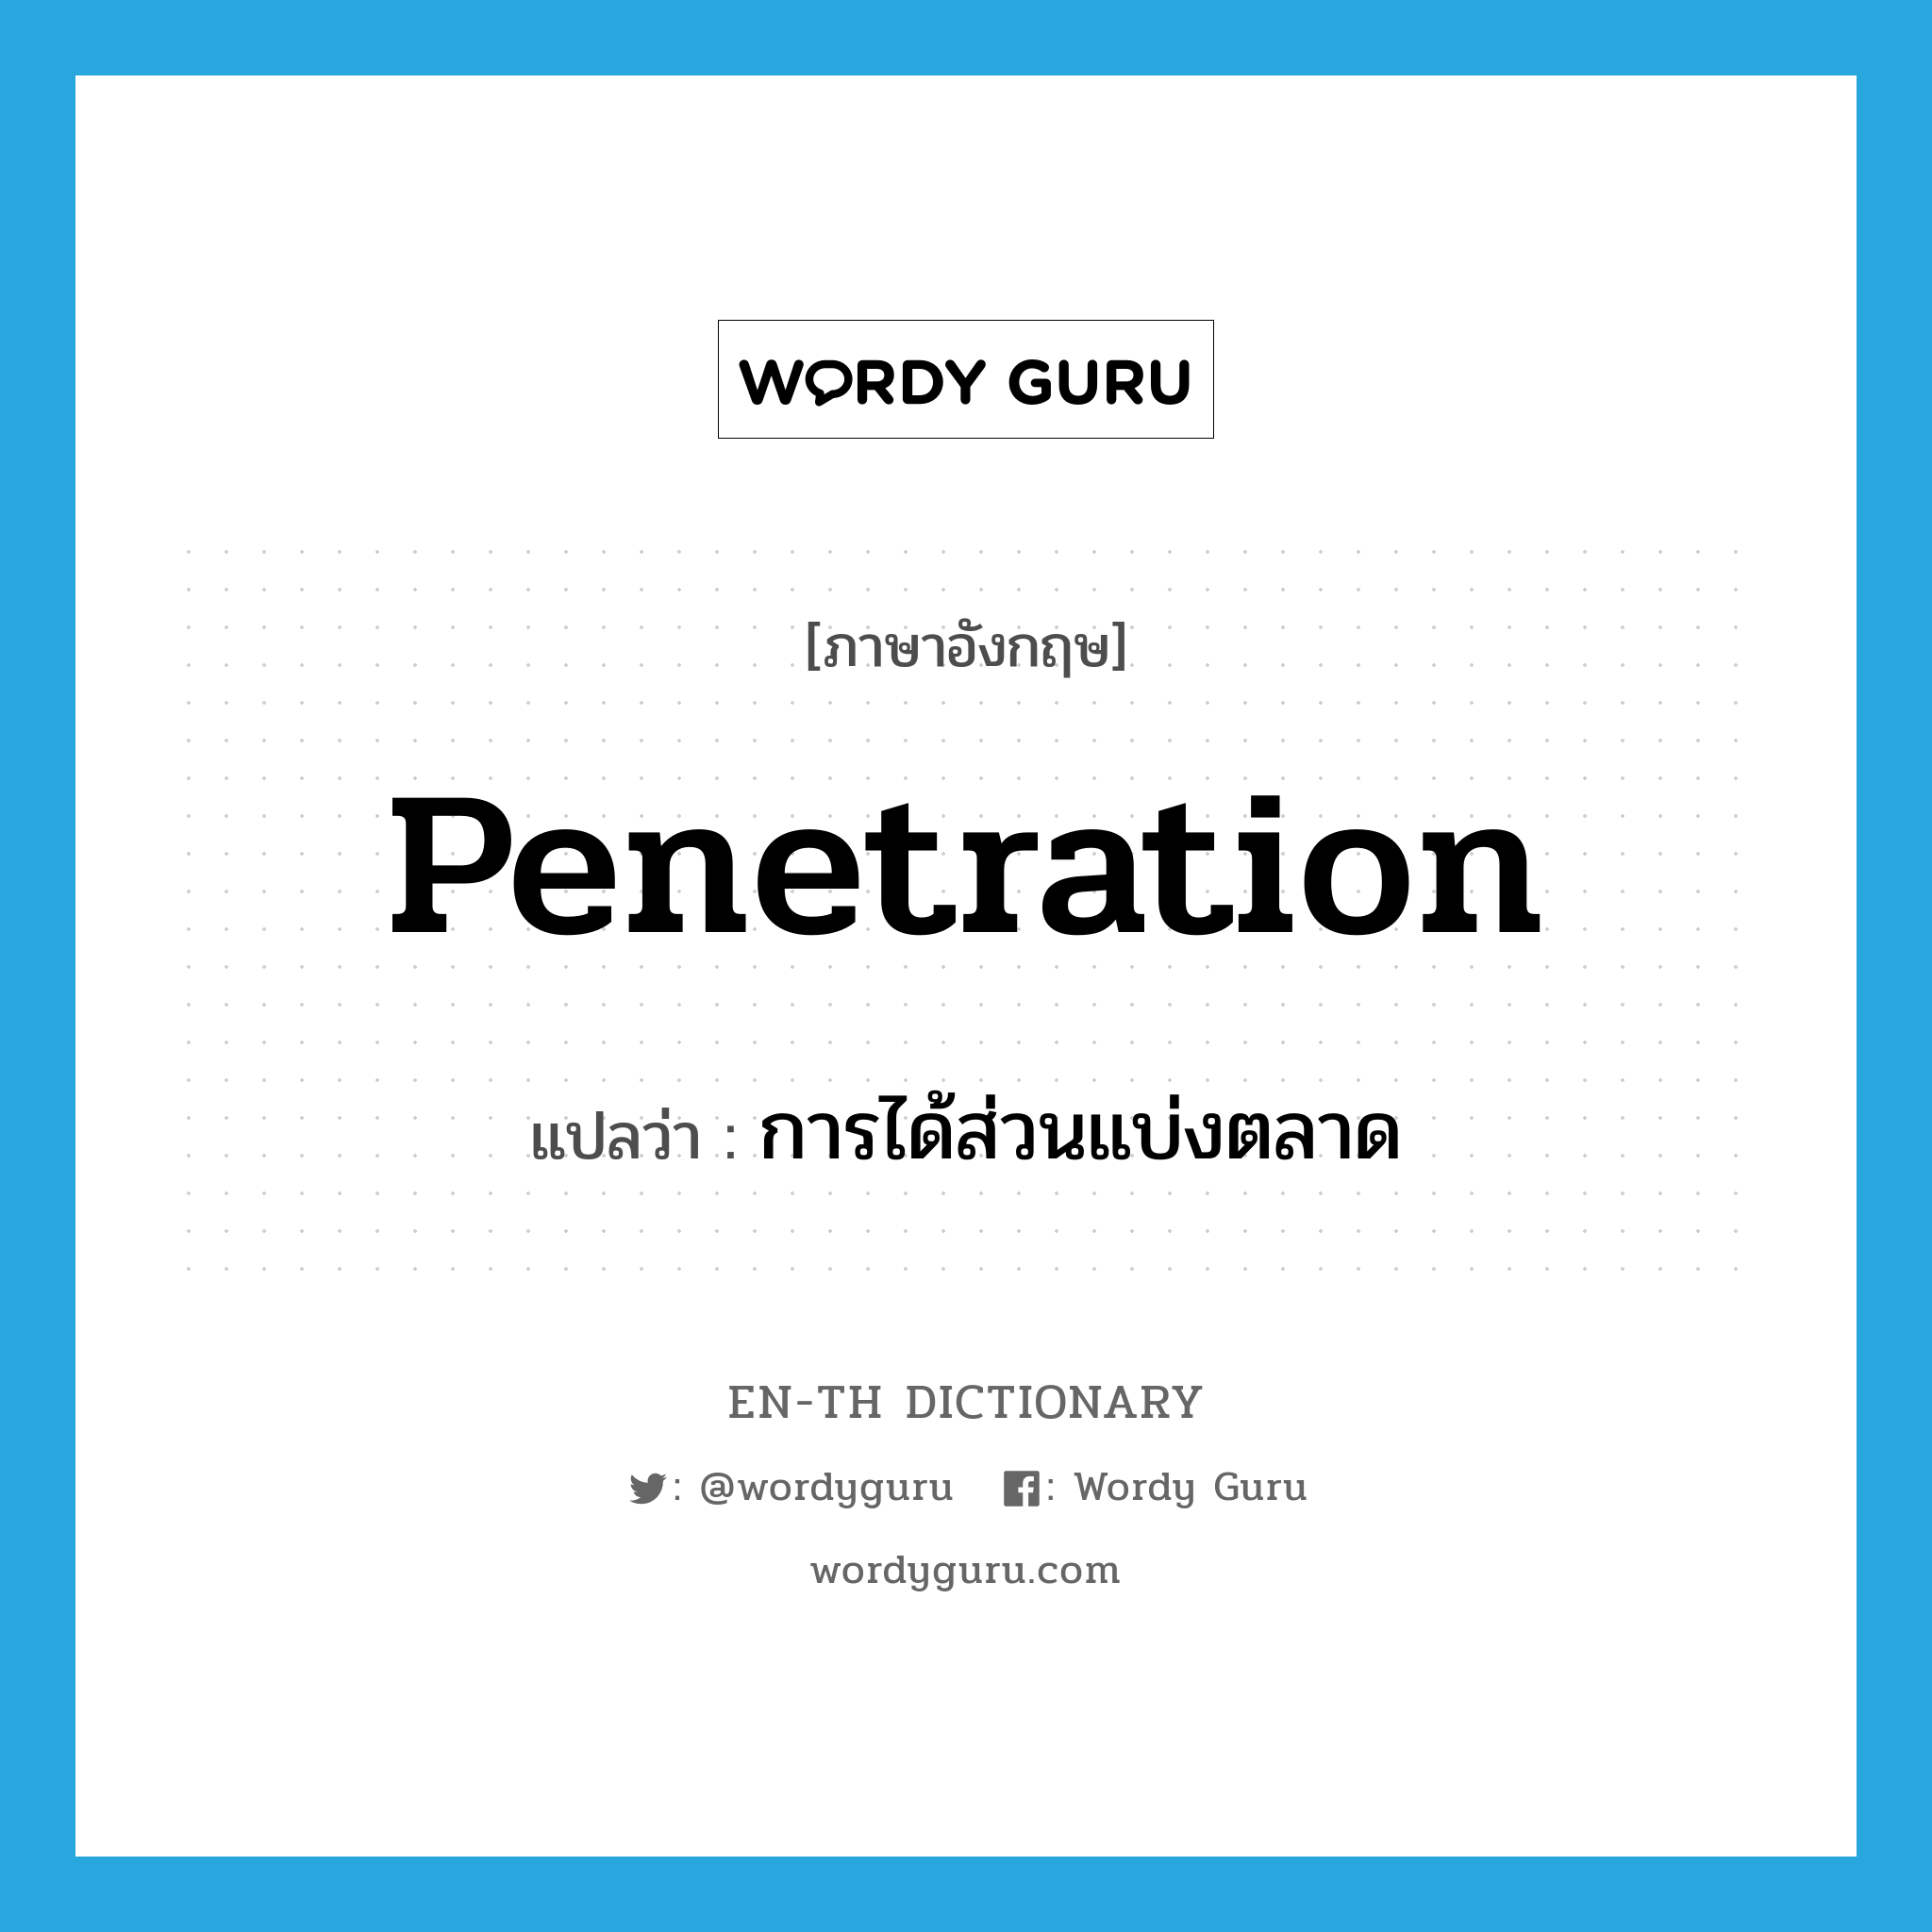 penetration แปลว่า?, คำศัพท์ภาษาอังกฤษ penetration แปลว่า การได้ส่วนแบ่งตลาด ประเภท N หมวด N